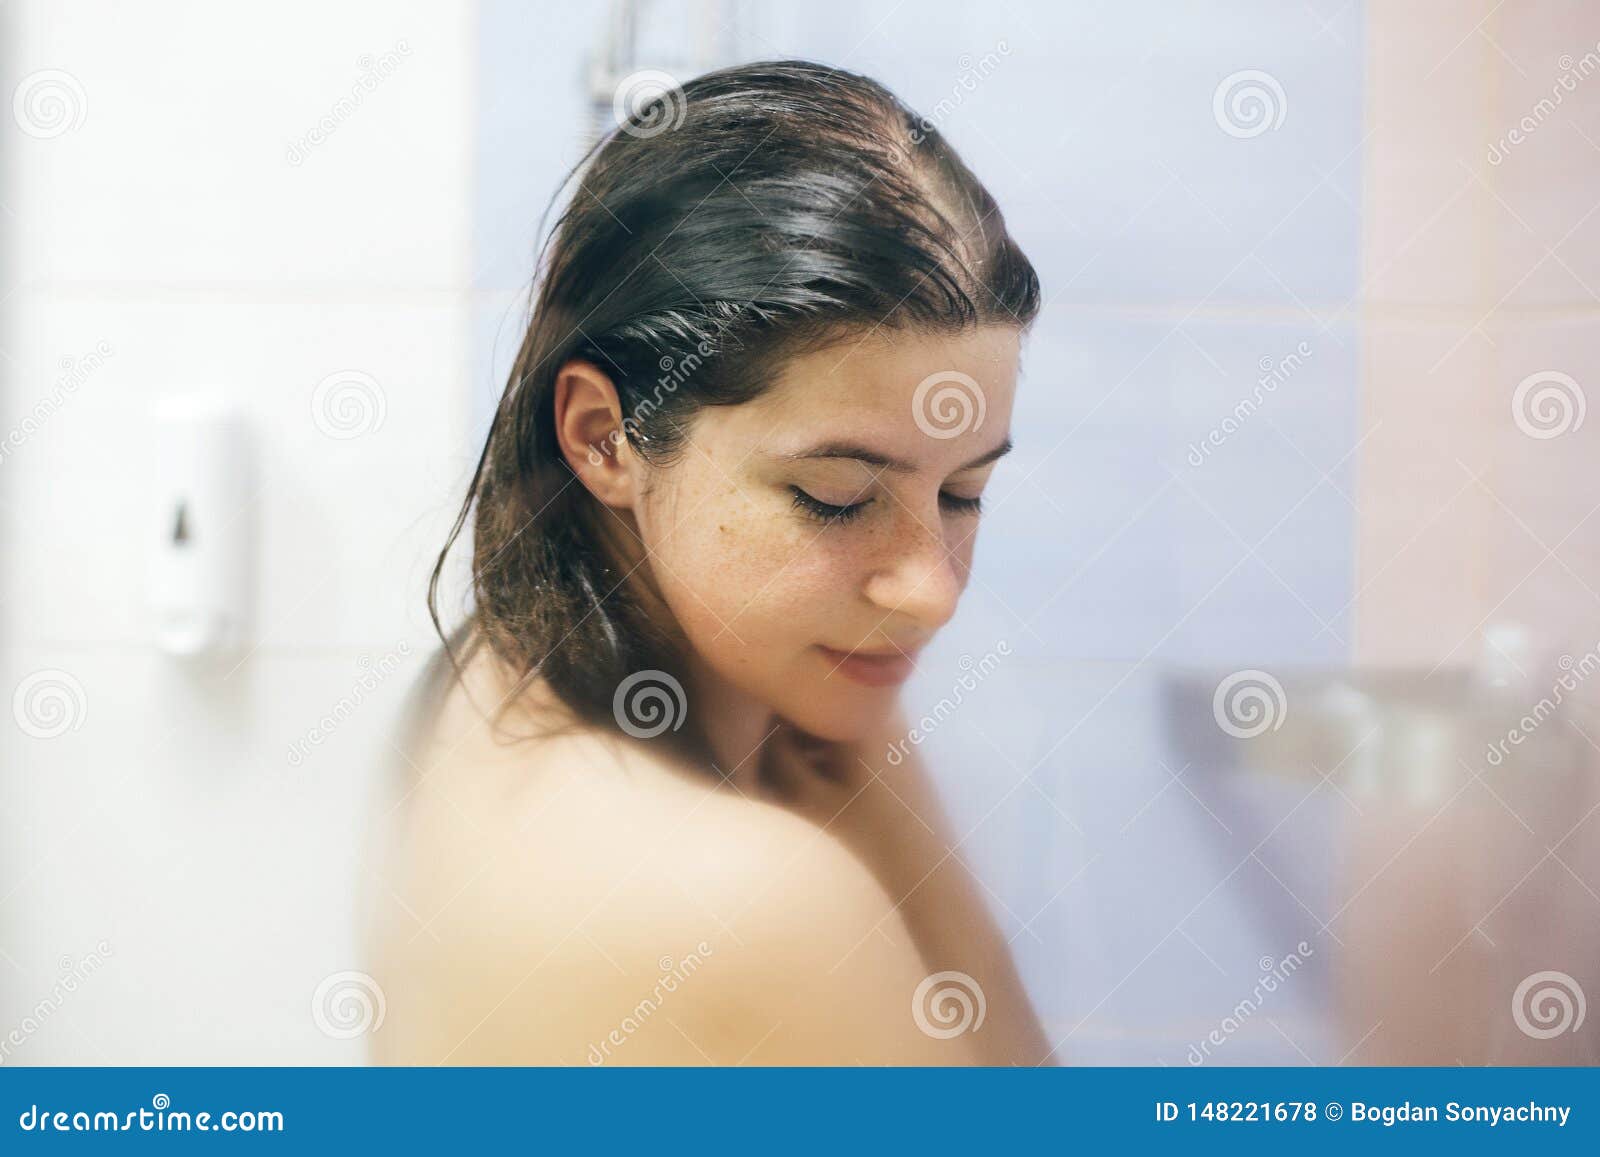 Тёлочка принимает прохладный душ (20 фото)